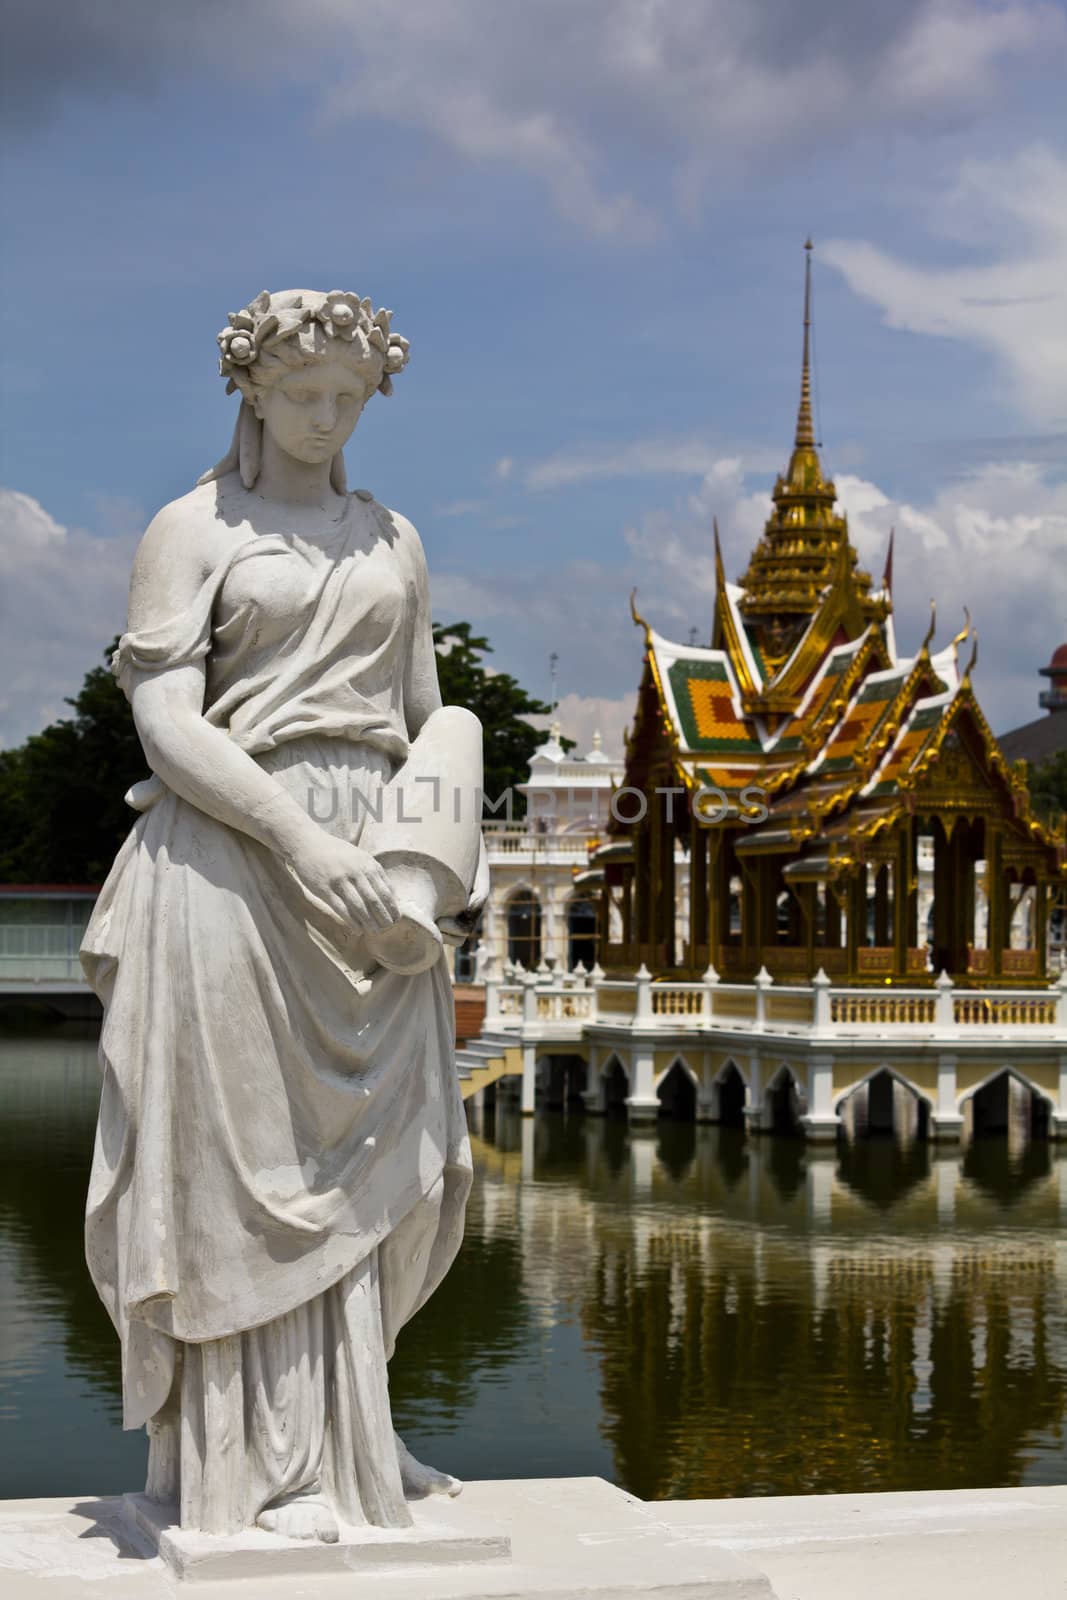 Statue at Bang Pa-In Palace Ayutthaya Thailand (Summer Palace of the Thai king)